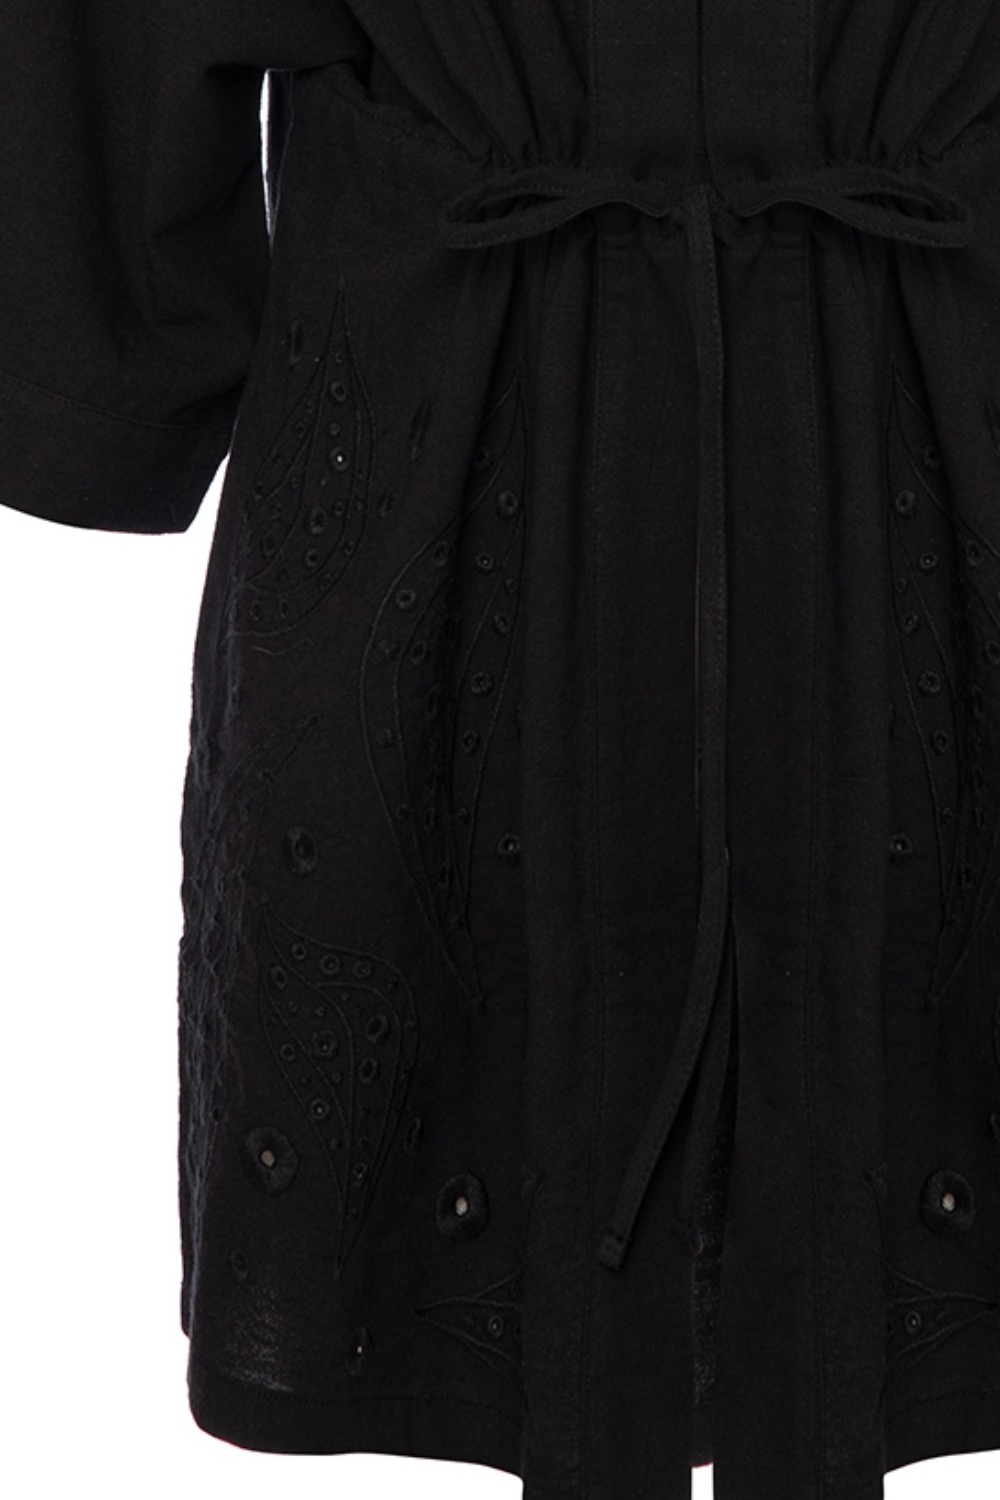 Alexandria Cotton Embroidered Short Black Kimono